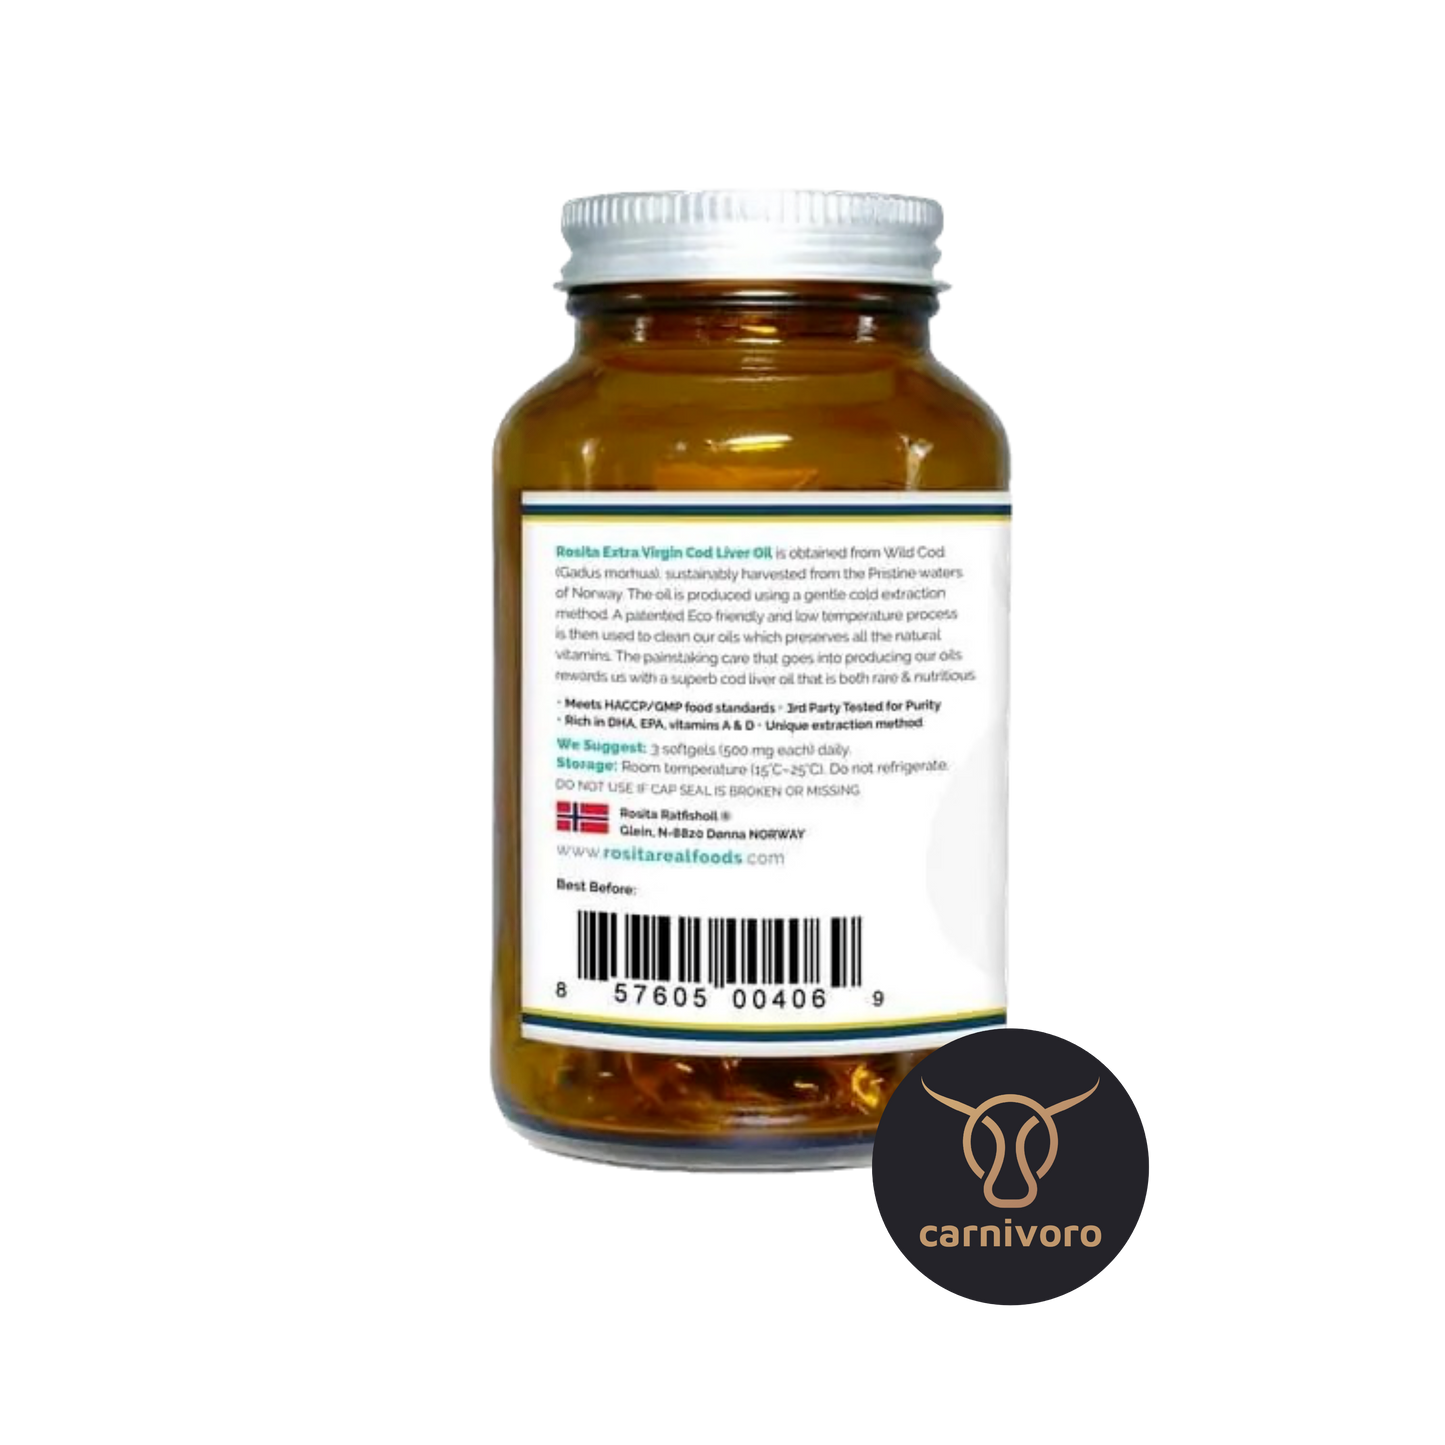 Rosita» Vitamina D &amp; Omega 3 (olio di pesce)» Capsule